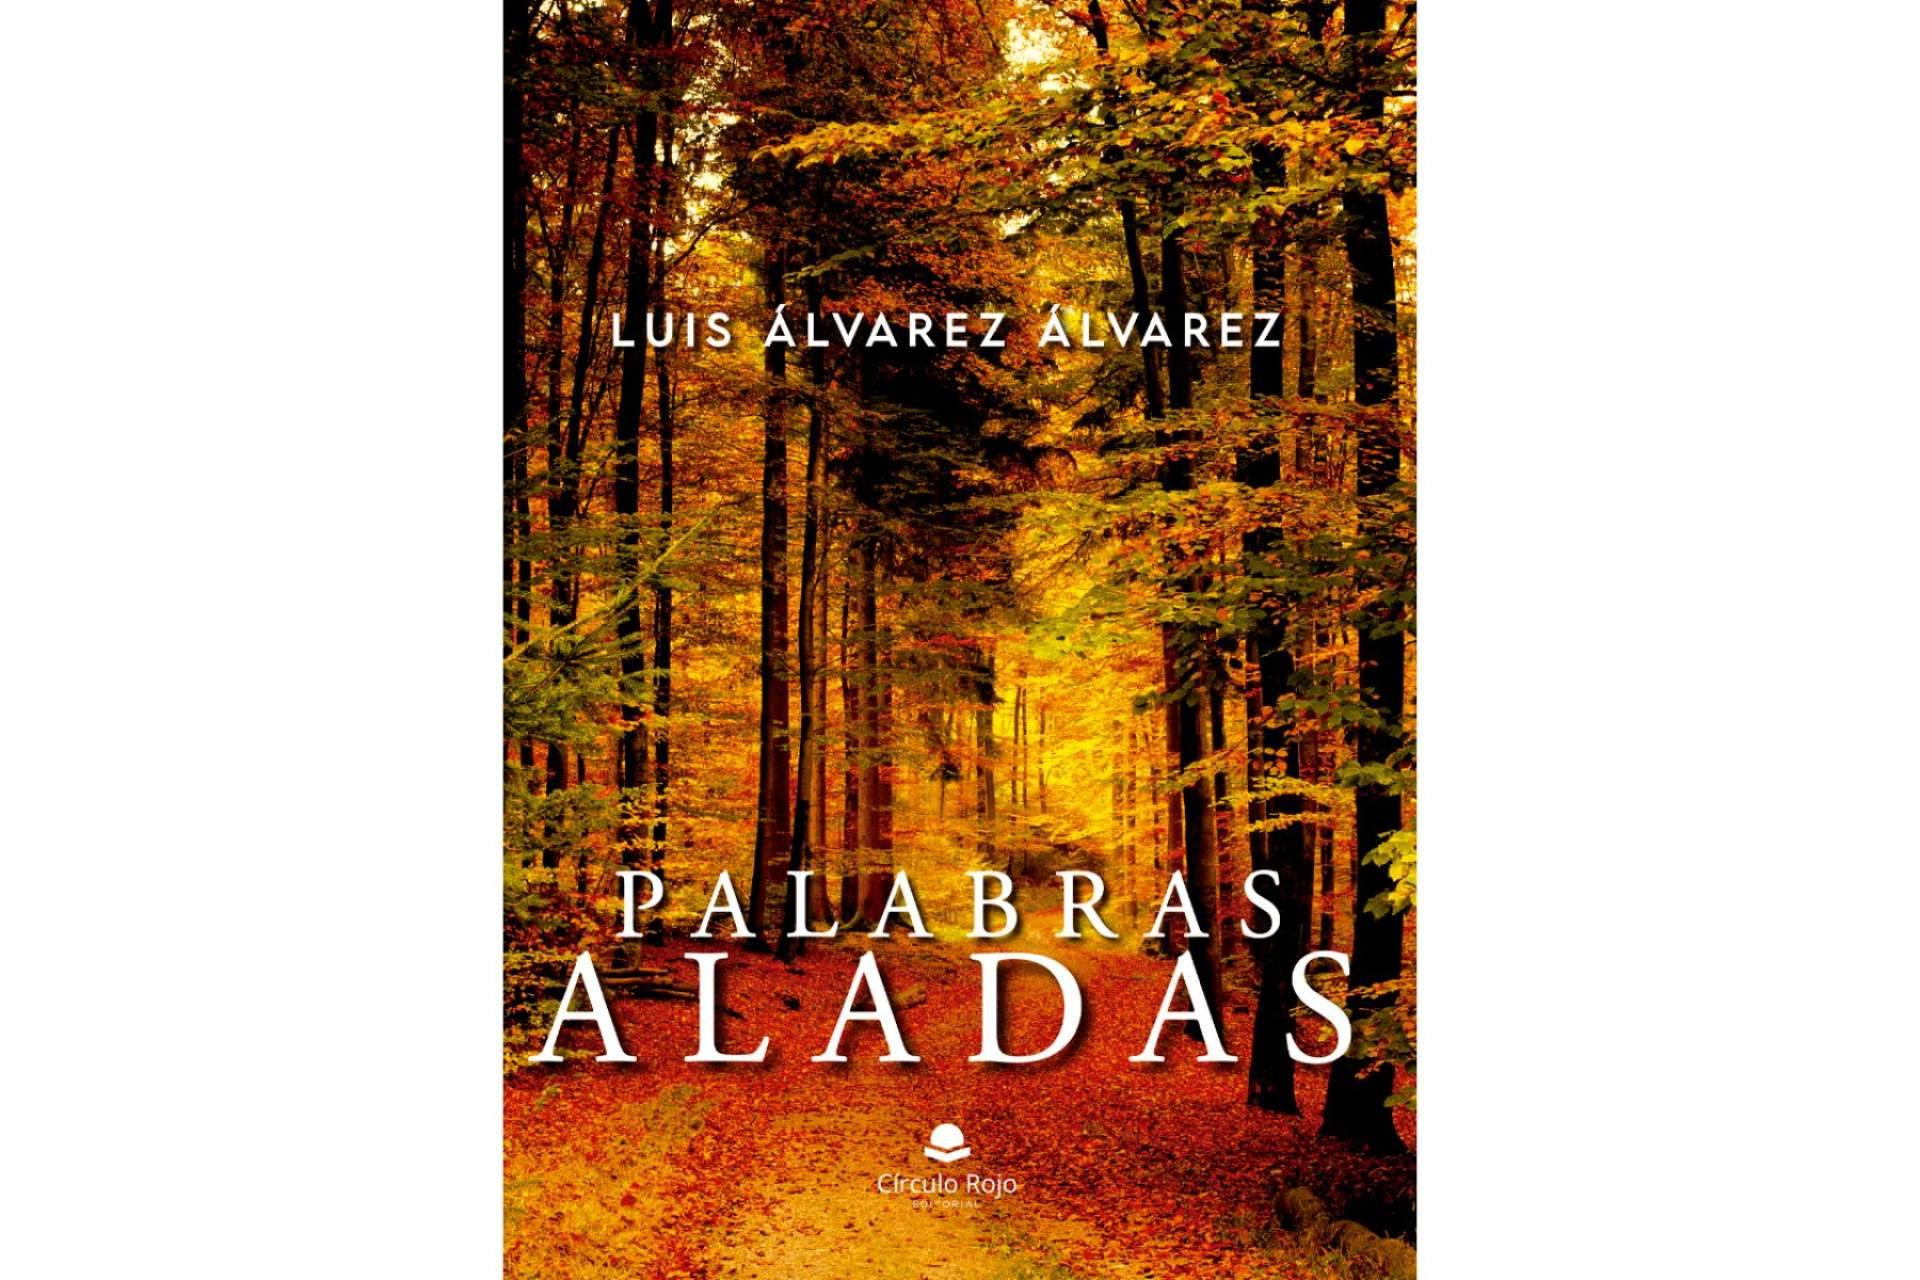  Luis Álvarez Álvarez publica ‘Palabras aladas’, una antología de relatos cortos que invita a sus lectores a reflexionar 